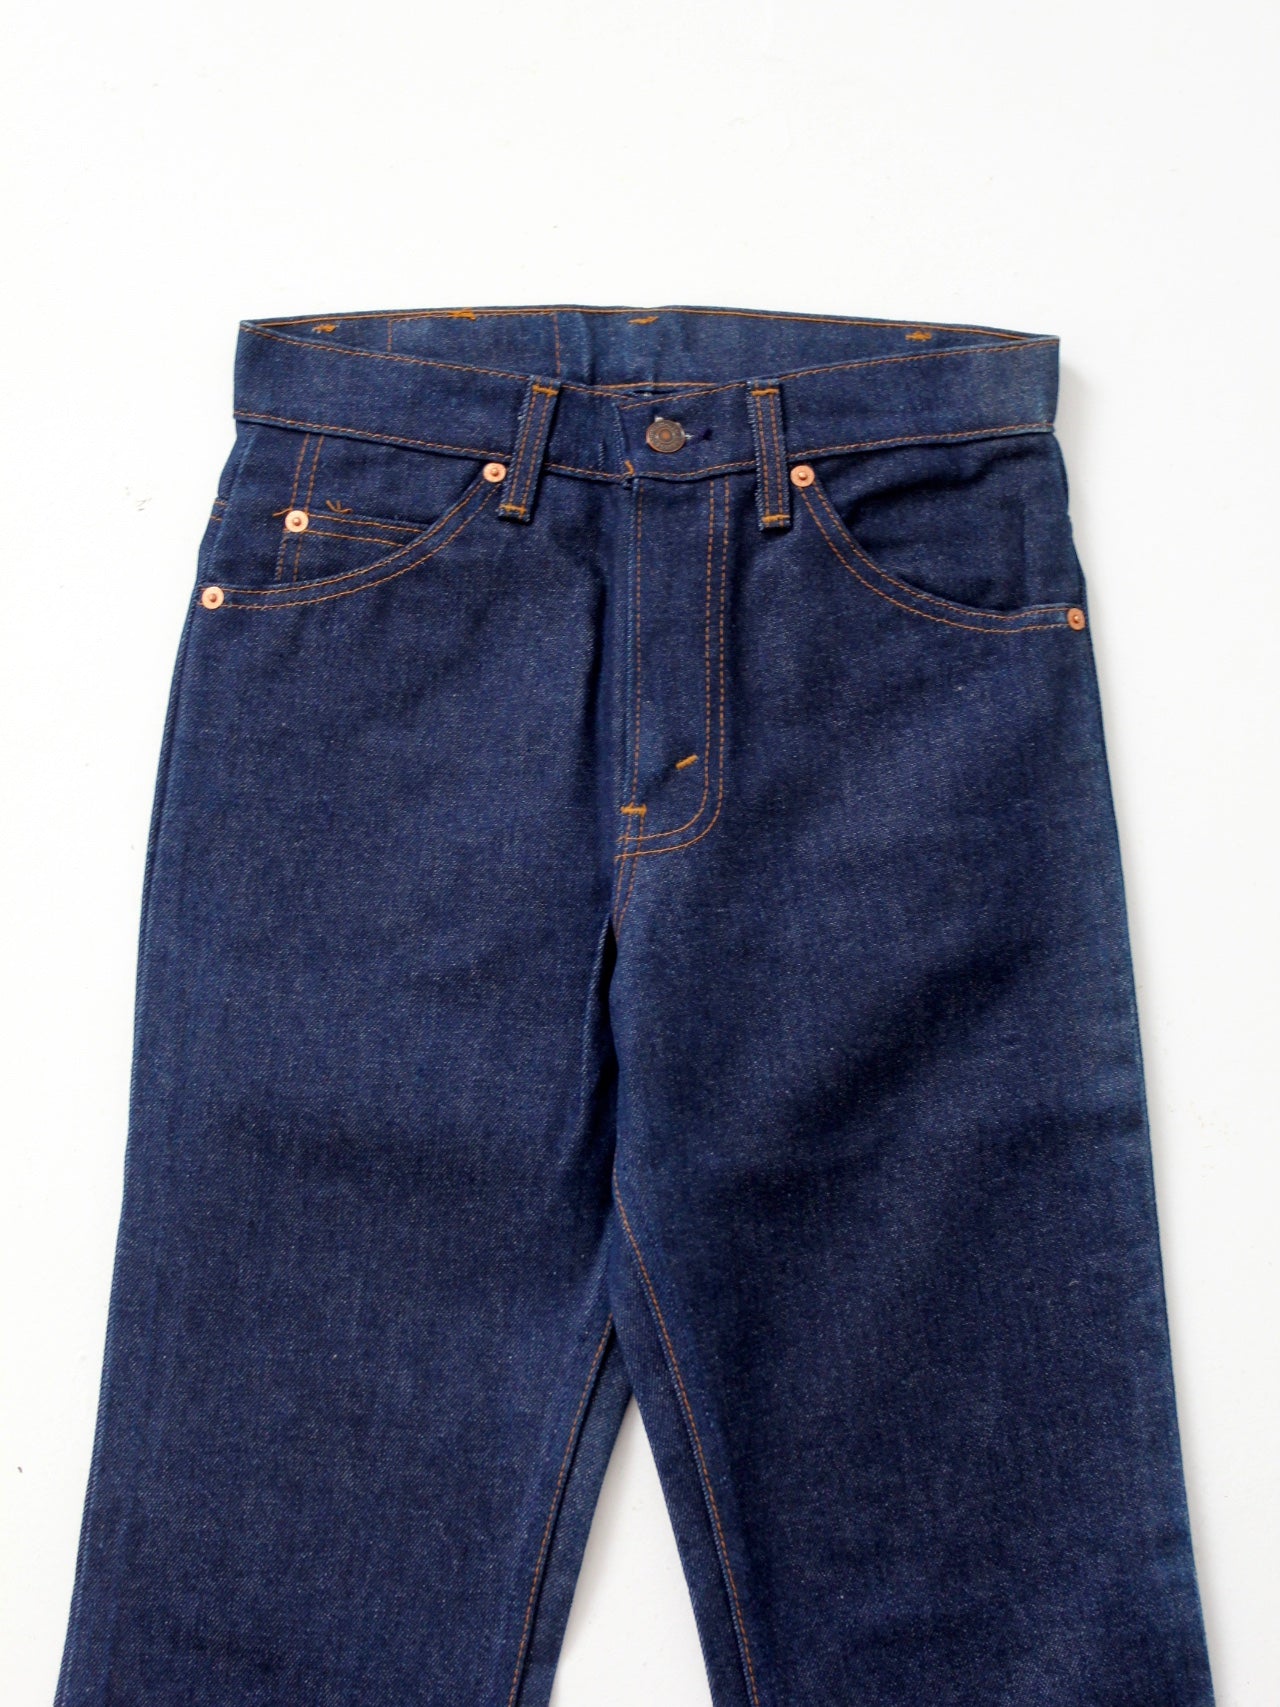 vintage 70s Levis dark wash 509 jeans, 28 x 33